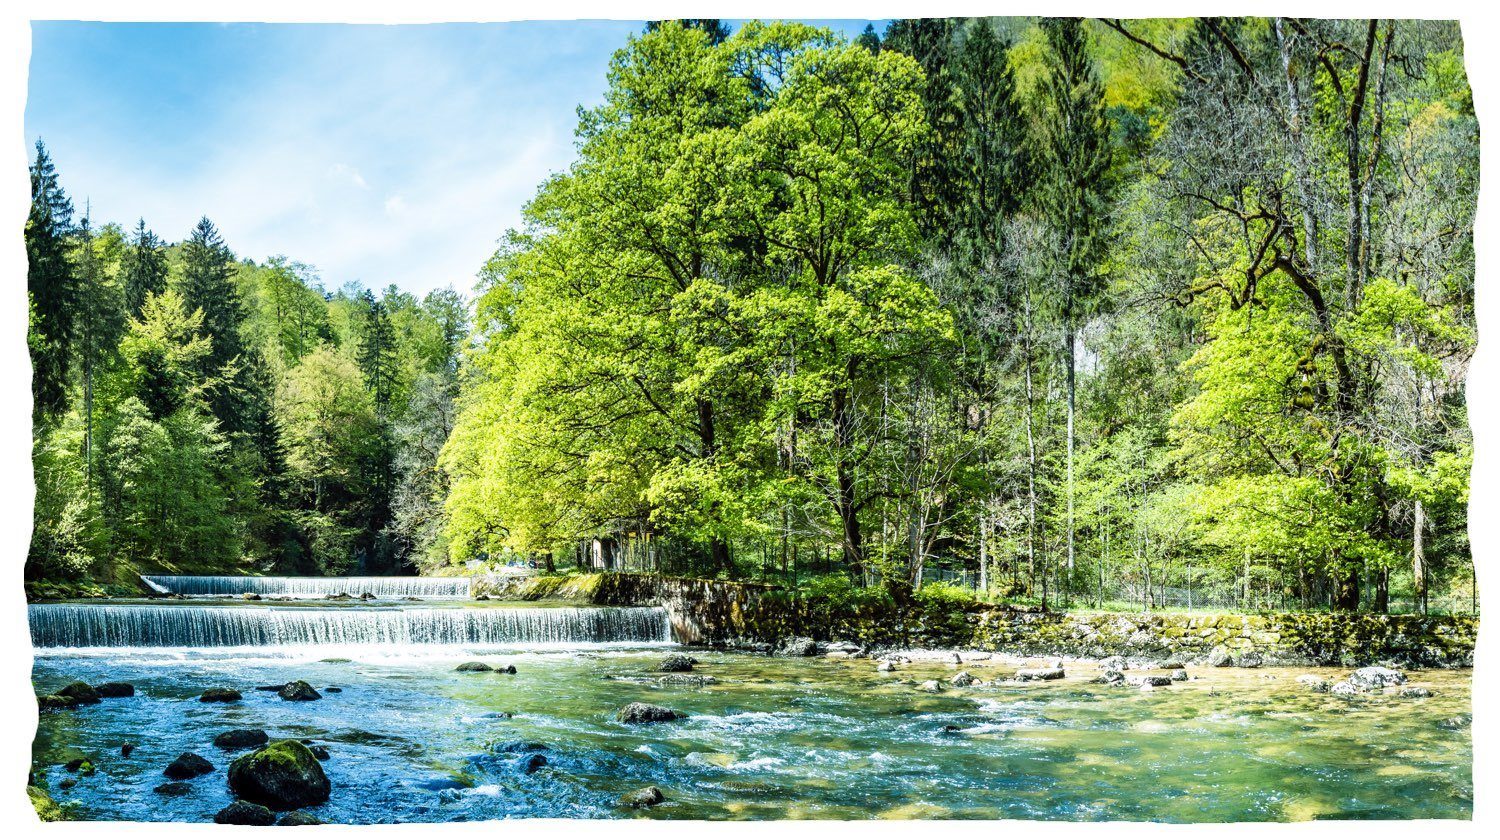 En ren flod med ett litet vattenfall som rinner genom en skog.